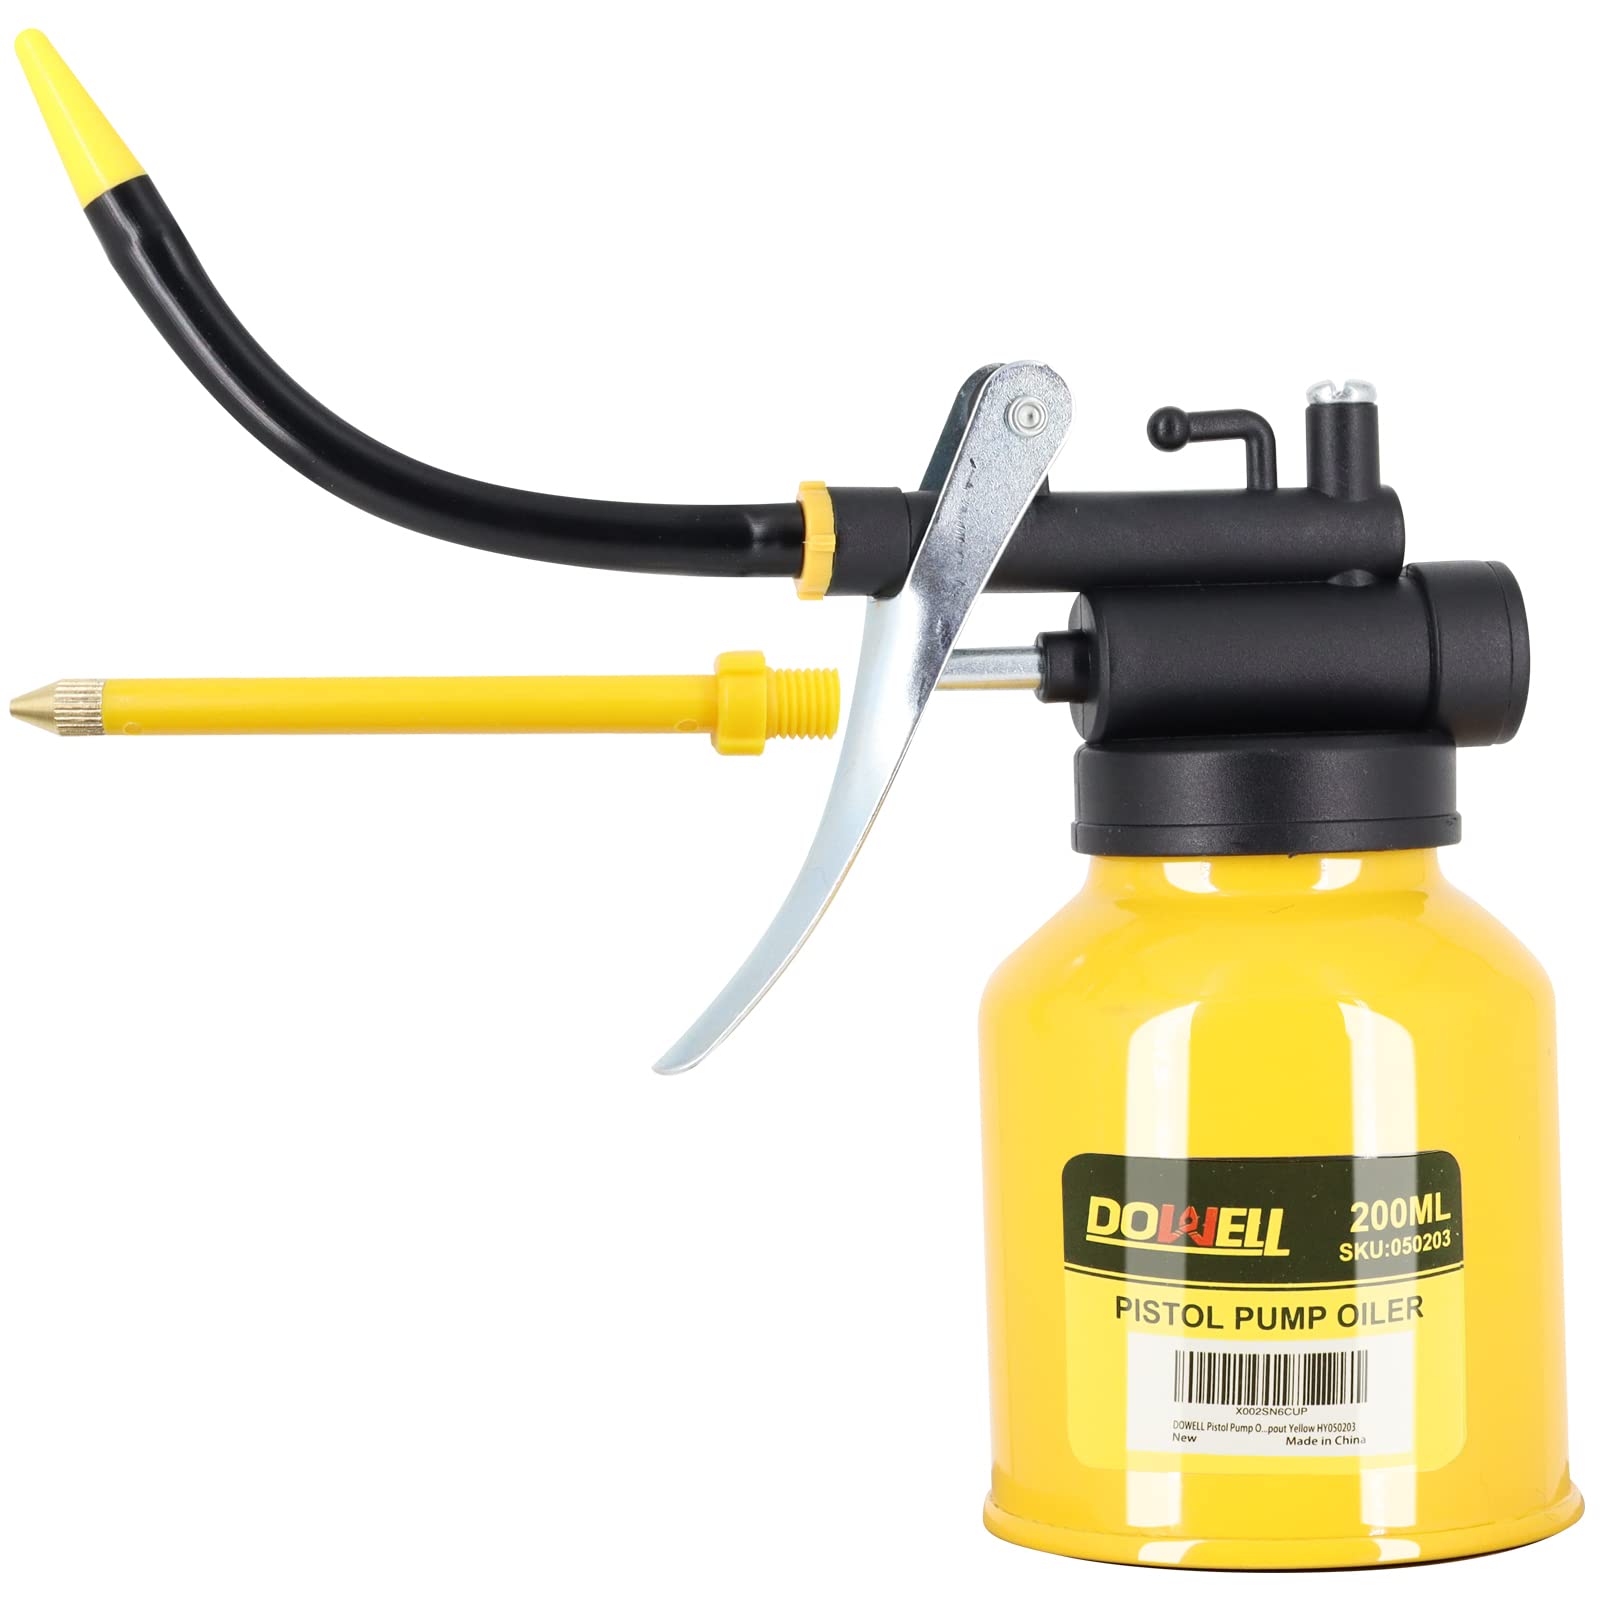 DOWELL Pistolenpumpe Öler Ölpumpen Metallöldose Schmierölpistole mit geradem flexiblem Auslauf (200ml, Gelb) von DOWELL